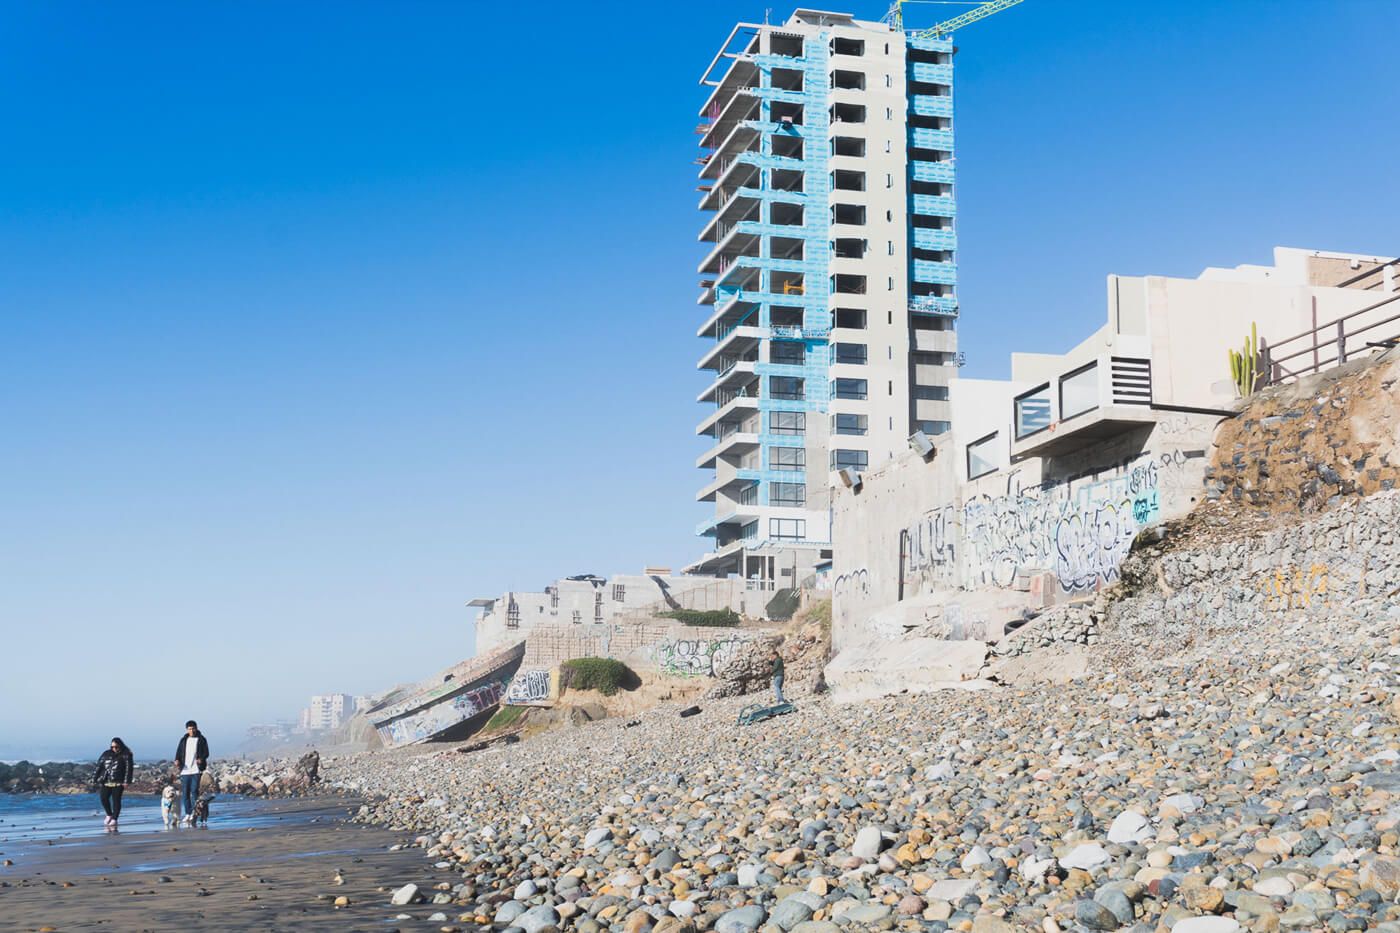 La playa de Tijuana está contaminada por las descargas de agua sucia que se hacen constantemente. Los desarrollos inmobiliarios ofertan sus departamentos como espacios con vista y acceso al mar, pero el agua no es apta para el turismo